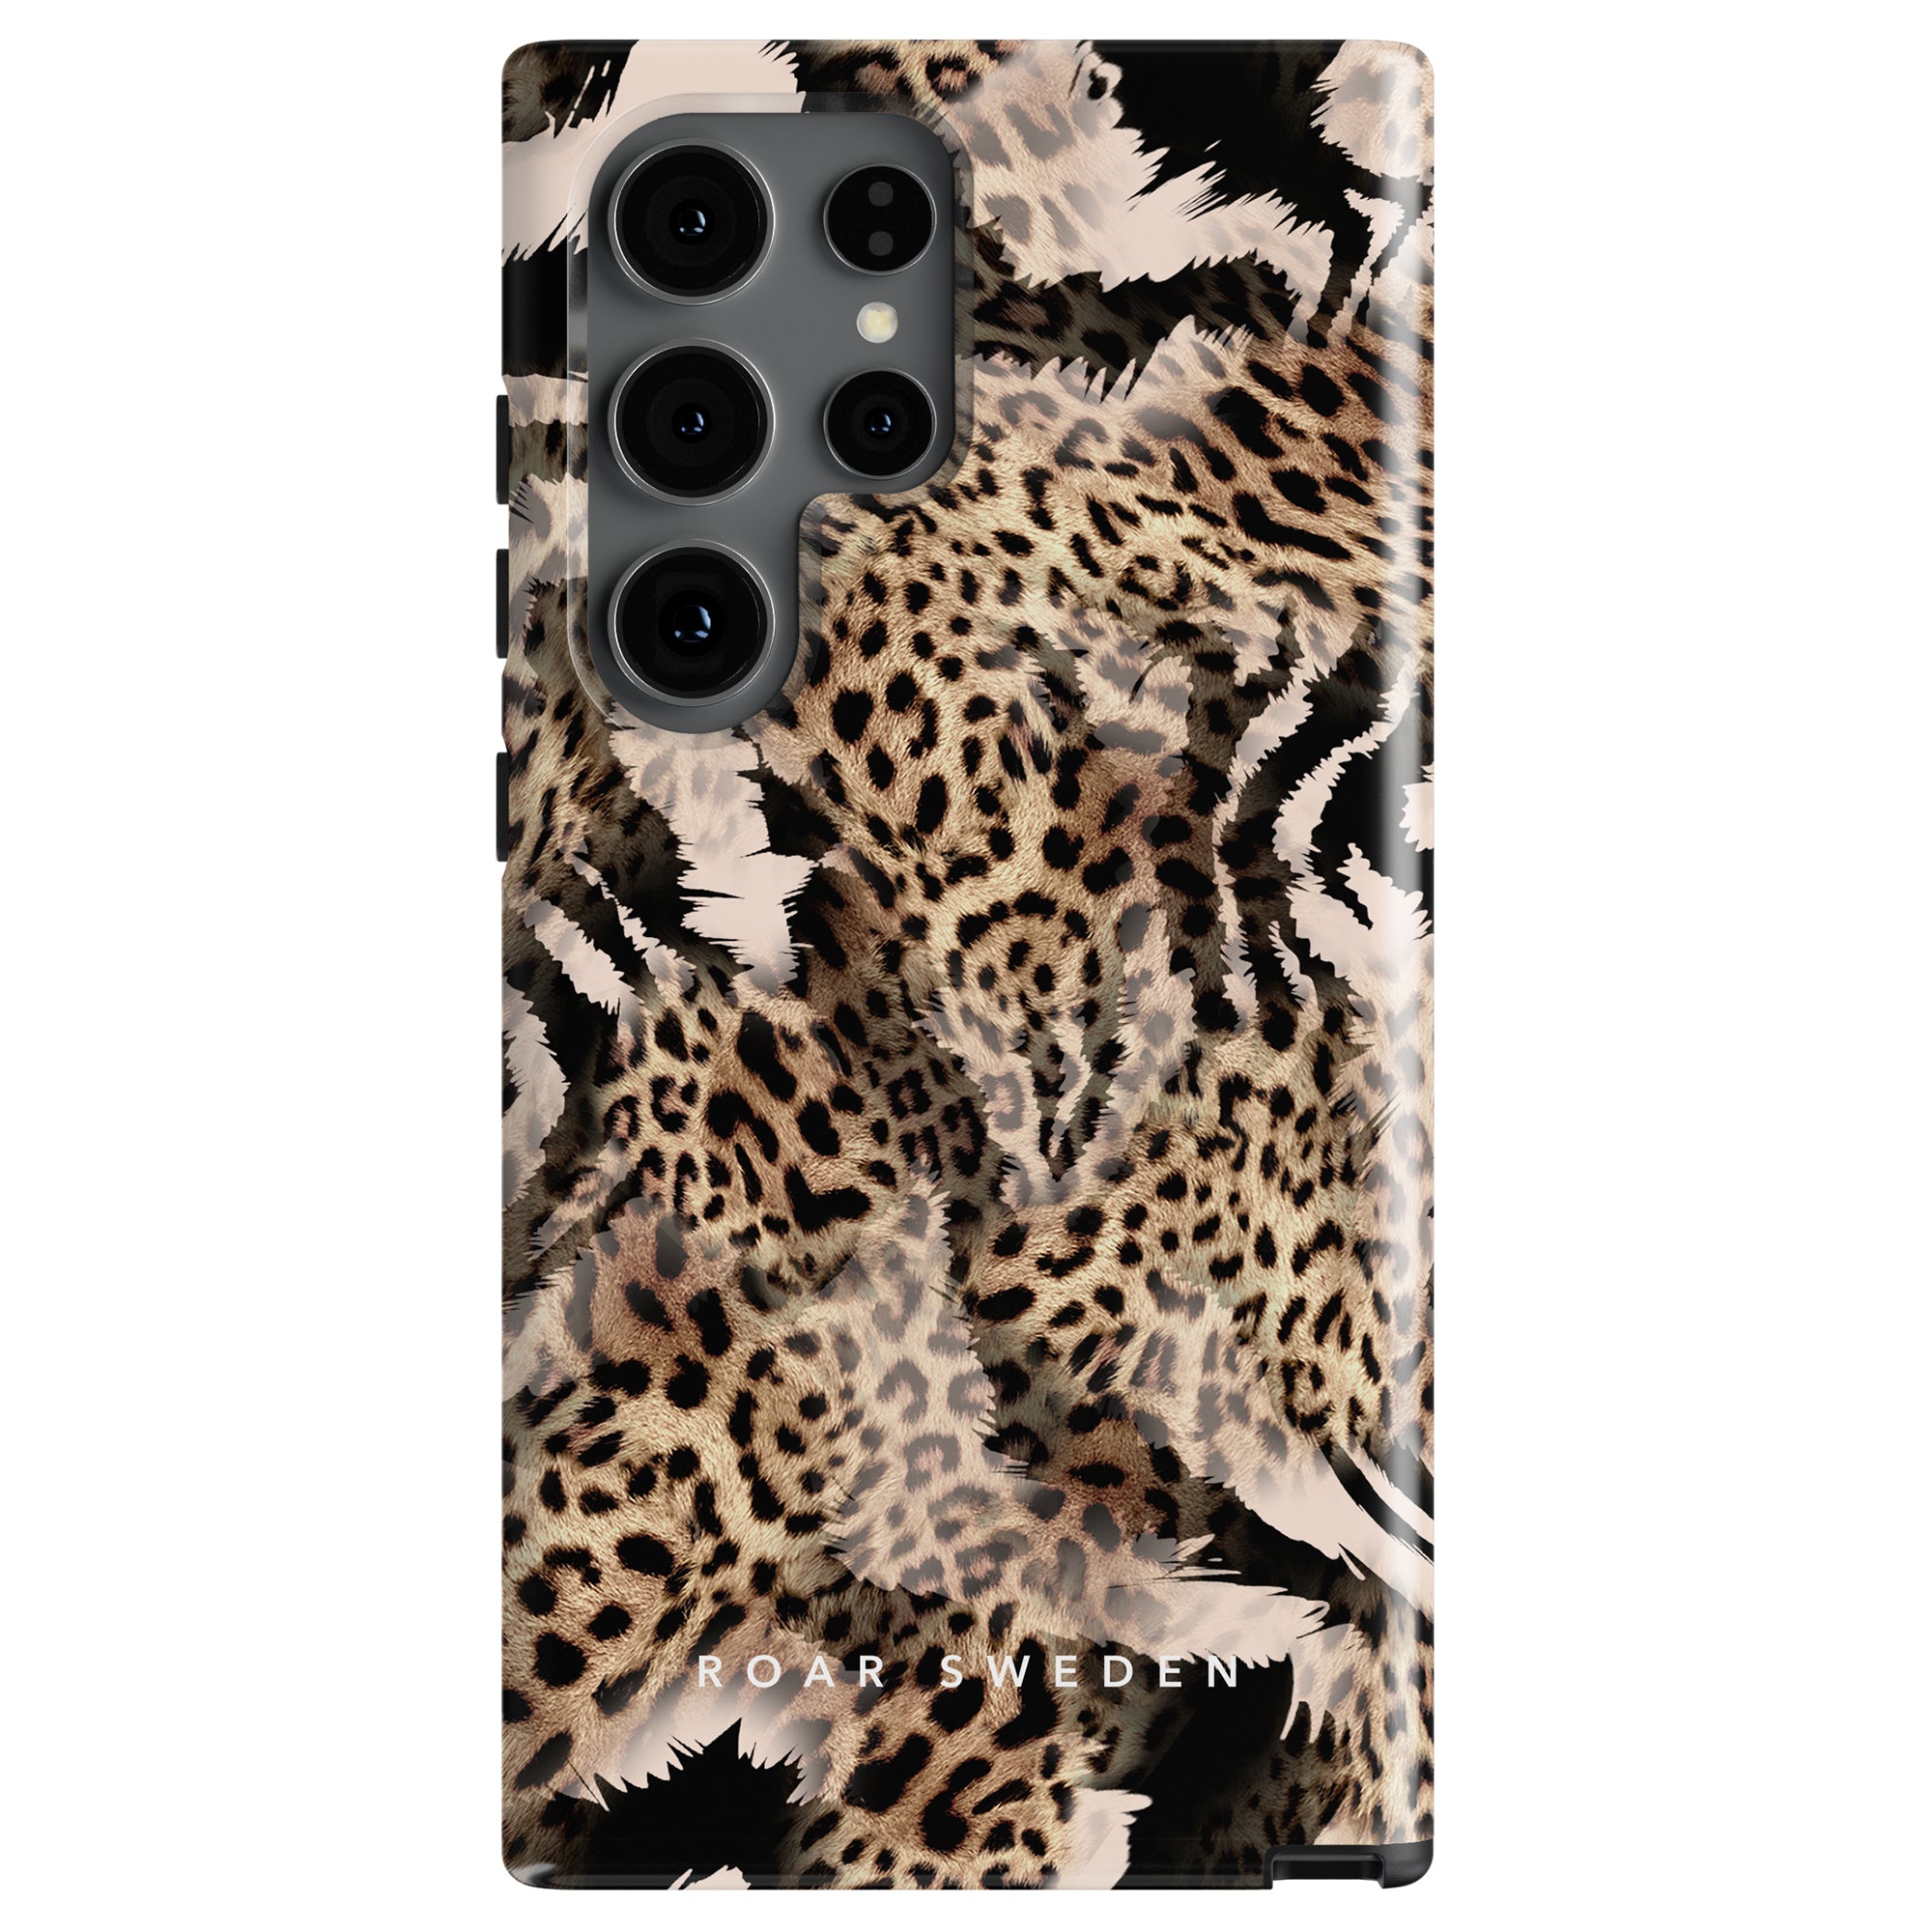 A smartphone with a Kenya - Tough case featuring both zebra och leopard mönster and "ROAR SWEDEN" written at the bottom, capturing the essence of the afrikanska savannen.